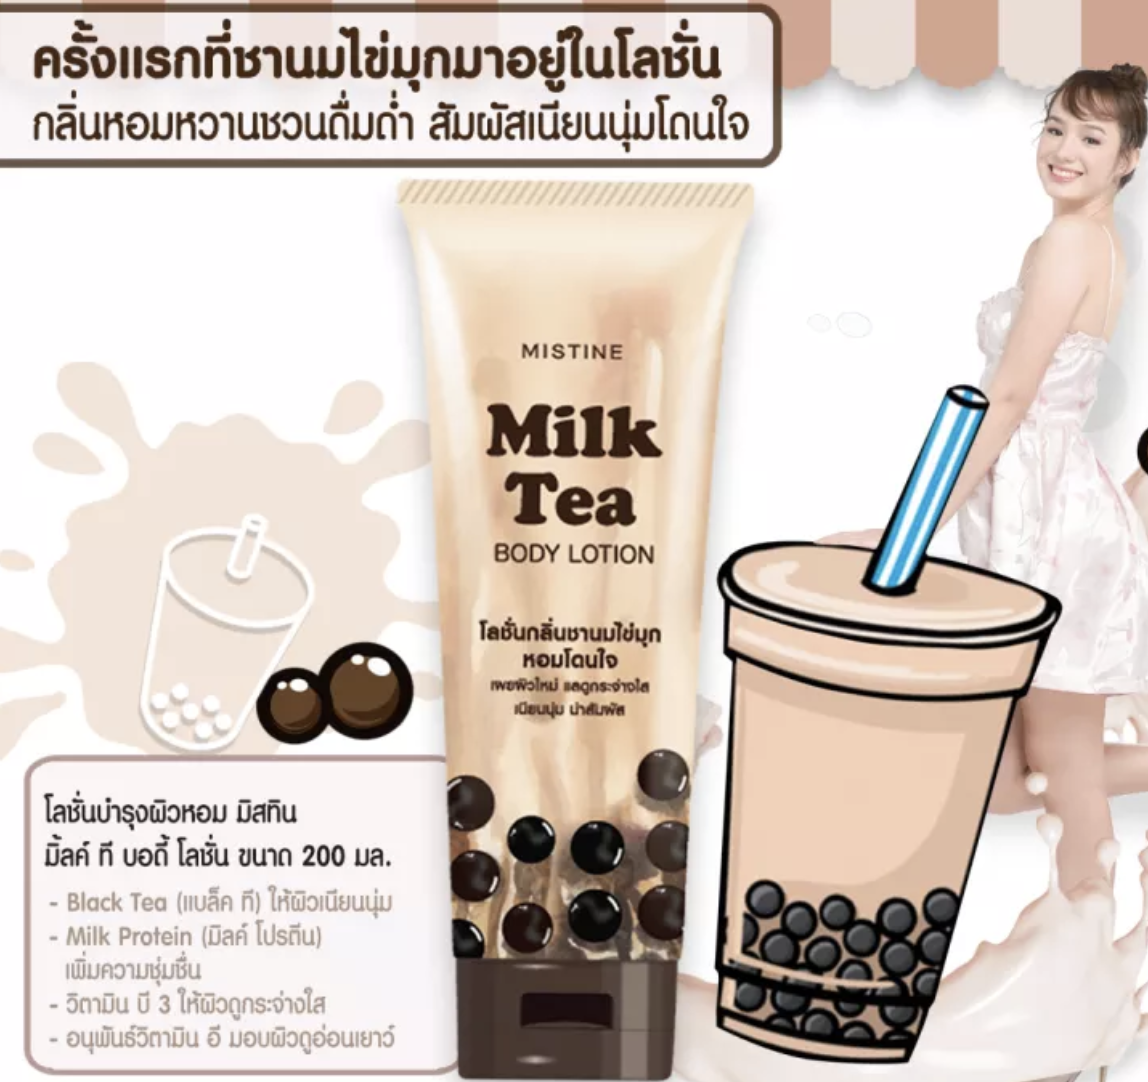 mistine milk tea lotion ingredients